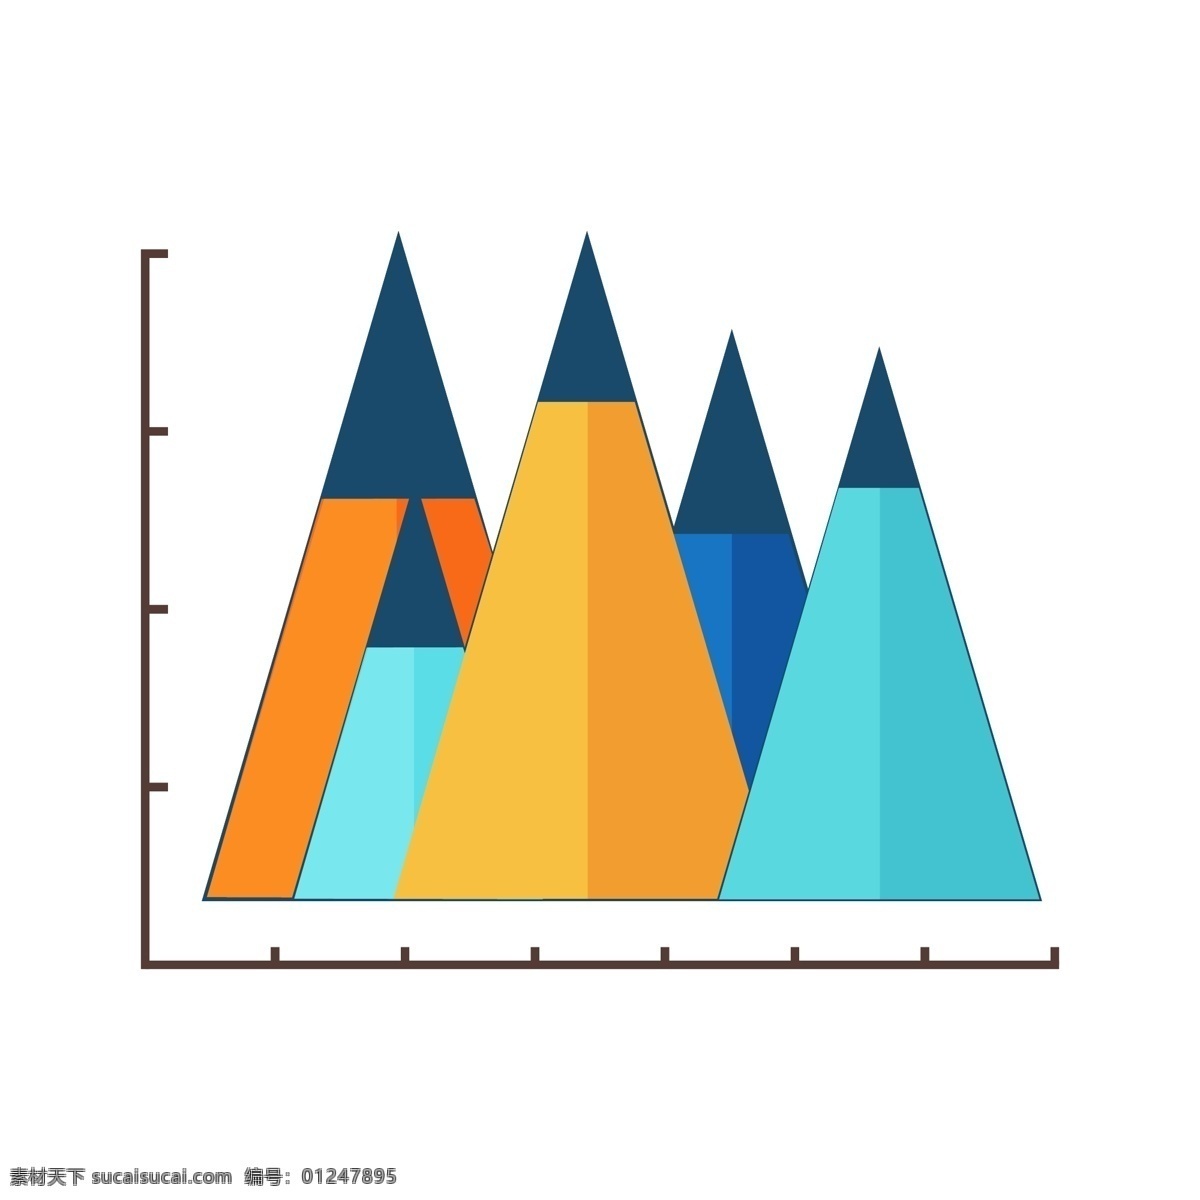 商务 数据分析 折线 面积 图 折线面积图 图表 分析图表 黄色 蓝色 图表插图 商务数据